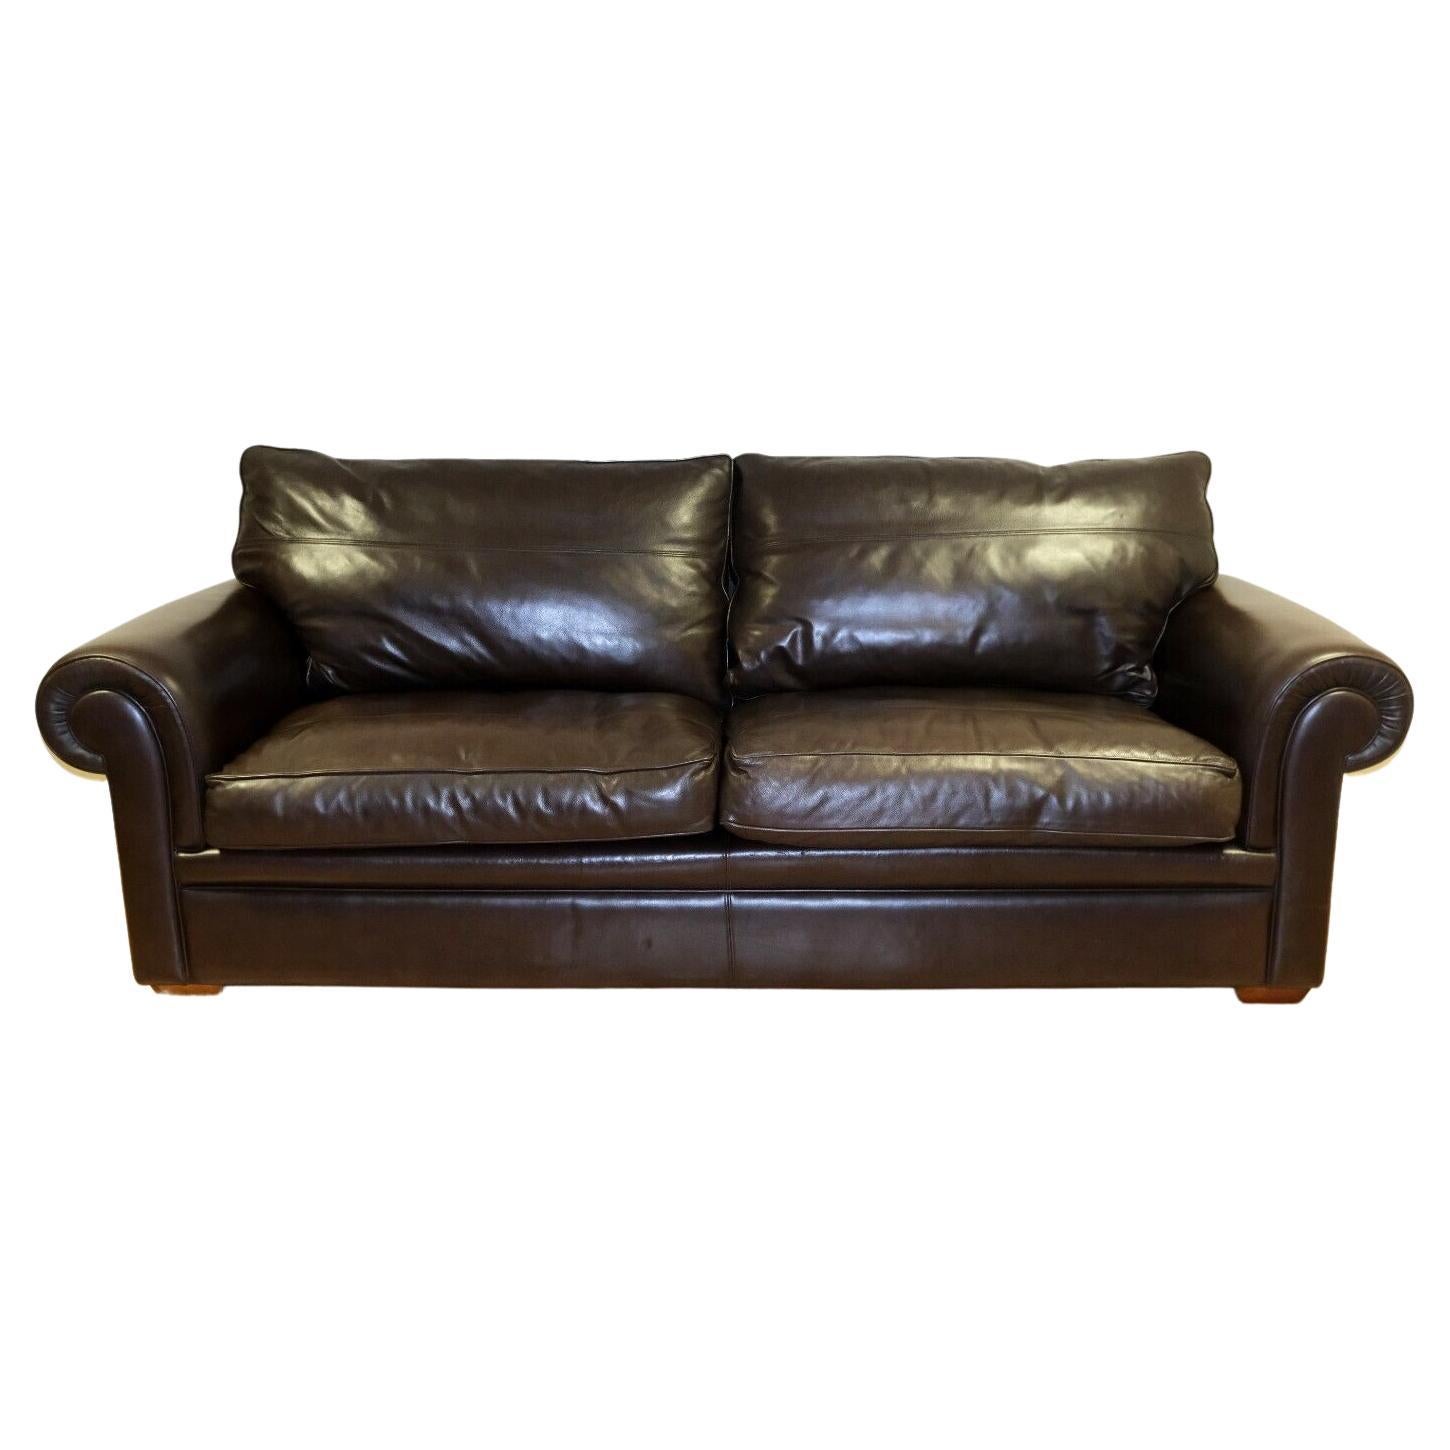 Wir freuen uns, dieses schöne DURESTA Garrick Dreisitzer-Sofa aus dunkelbraunem Leder mit Scroll-Armen zum Verkauf anbieten zu können. 

Dieses elegante und klassische Sofa verbindet modernes mit traditionellem Design. Das weiche Leder mit seiner